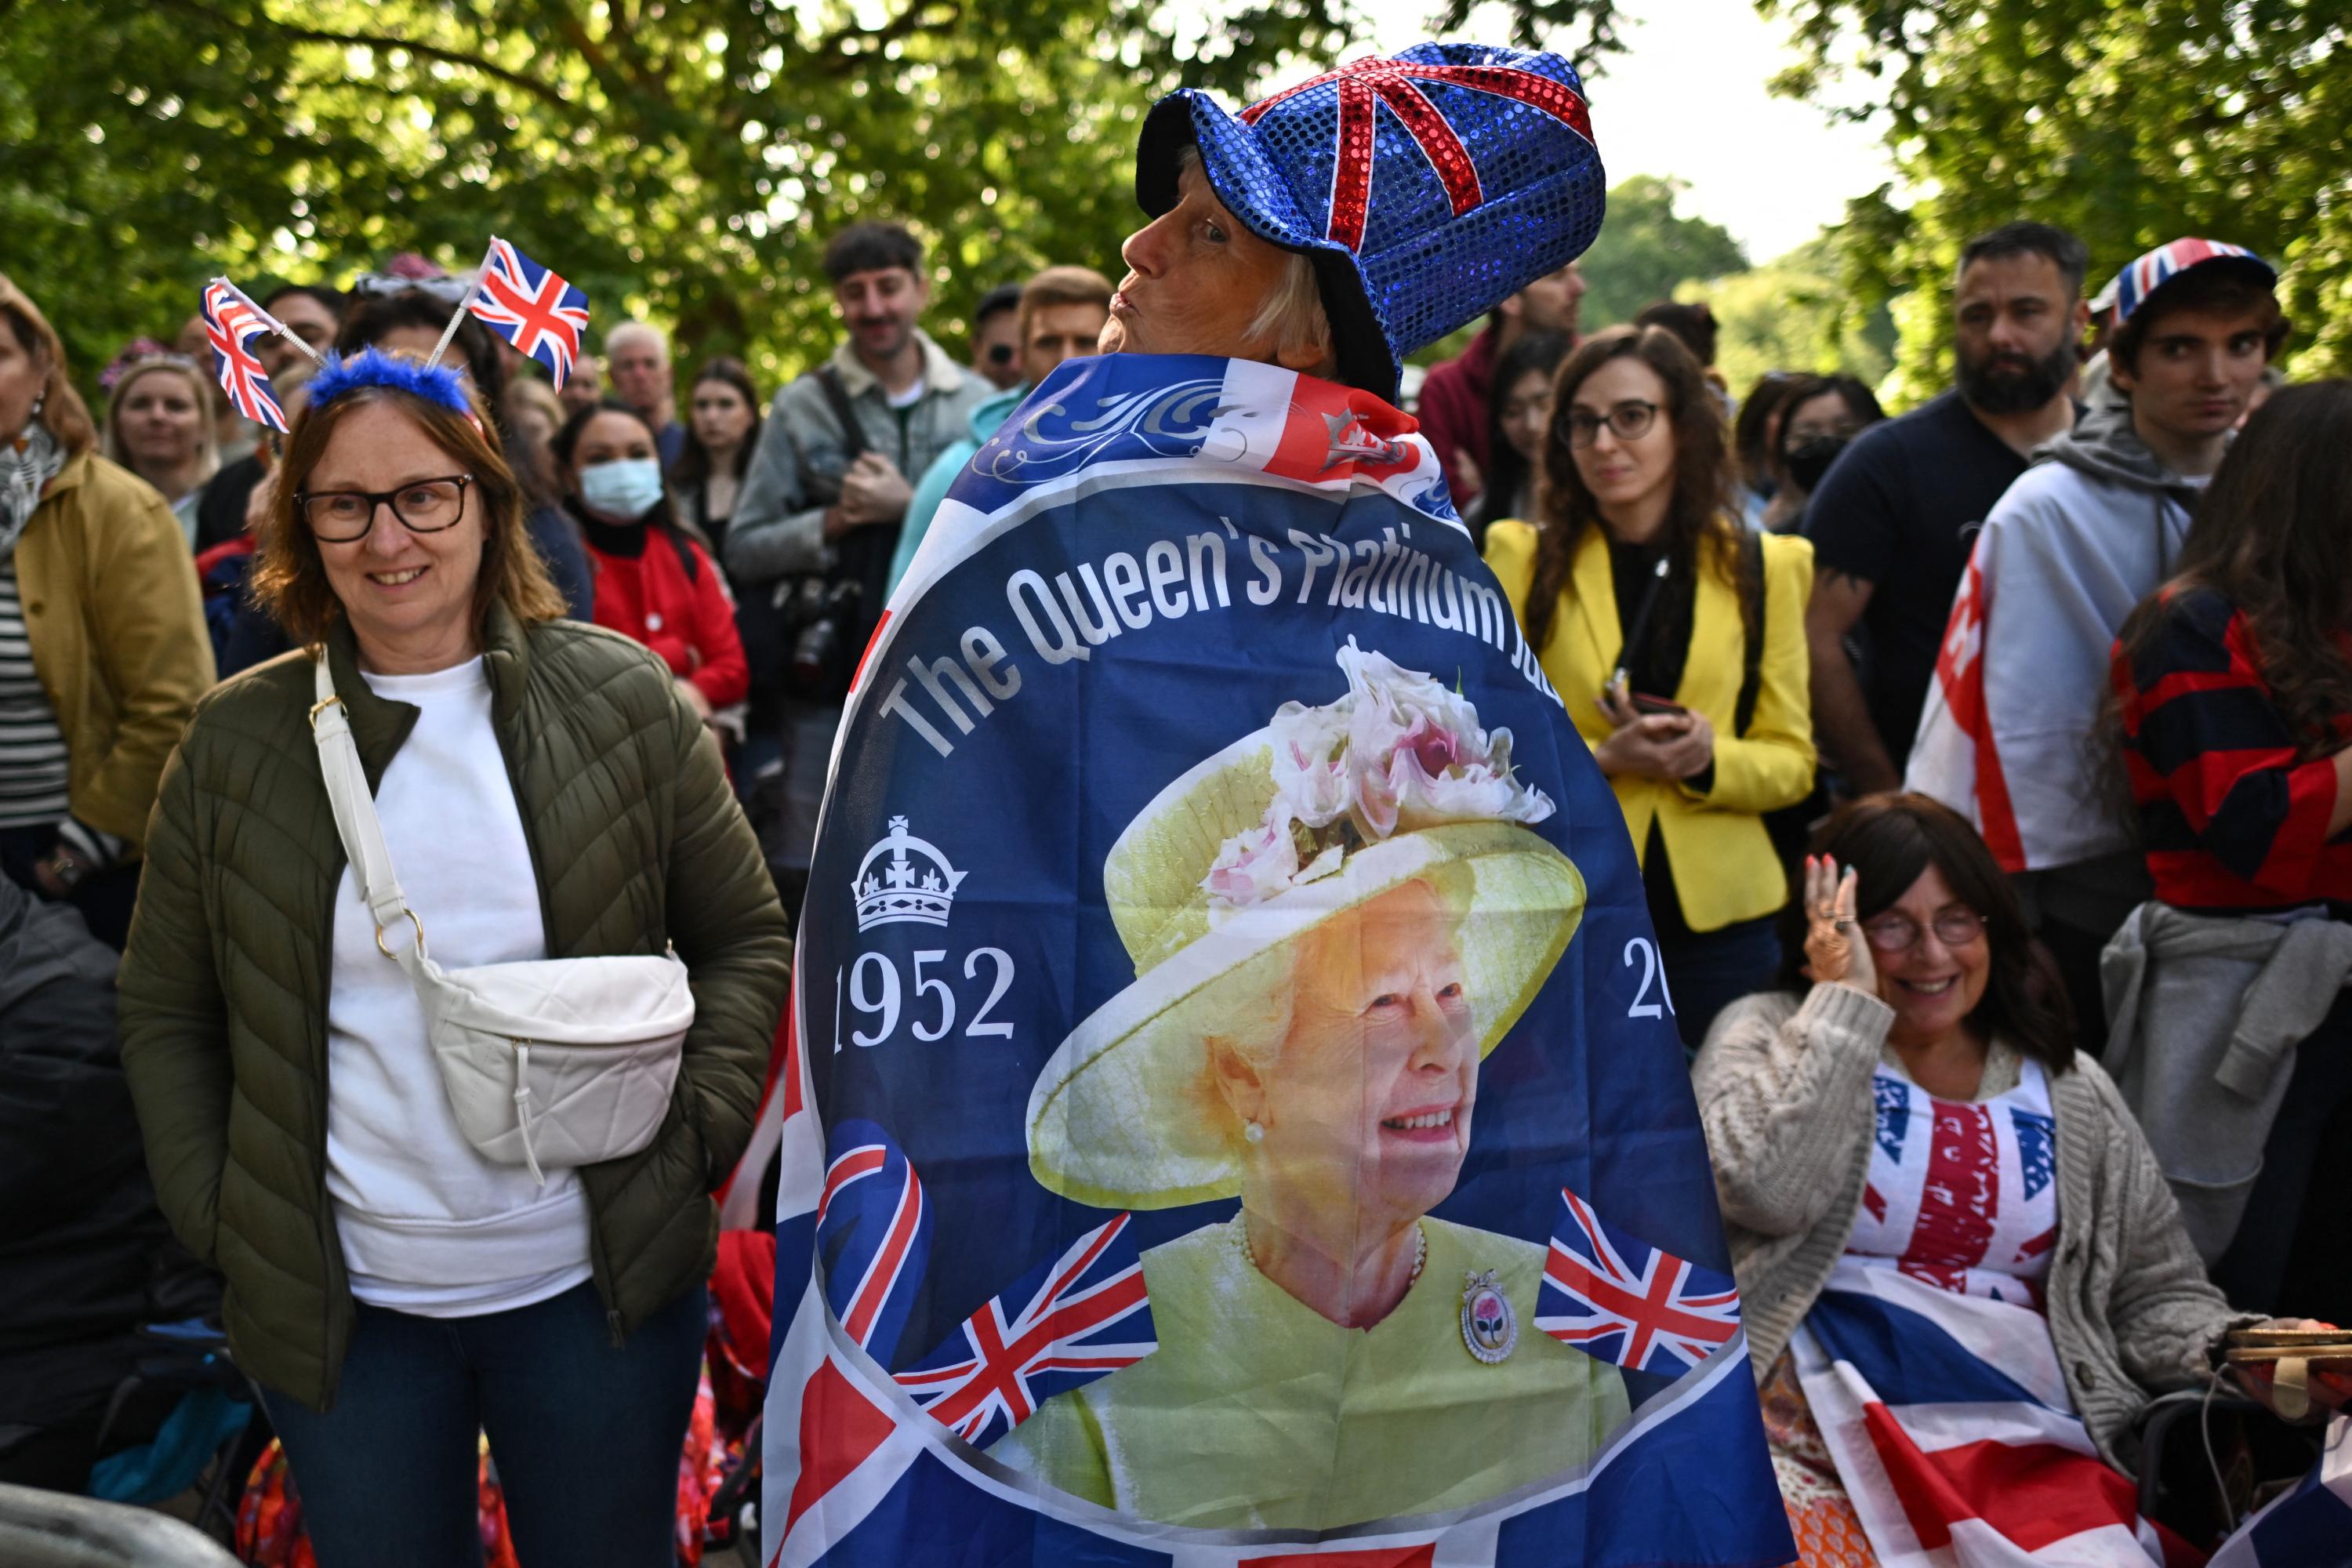 Drapeaux, fiers supporters et parade militaire : en images, toute une nation rend hommage à sa souveraine, Elizabeth II